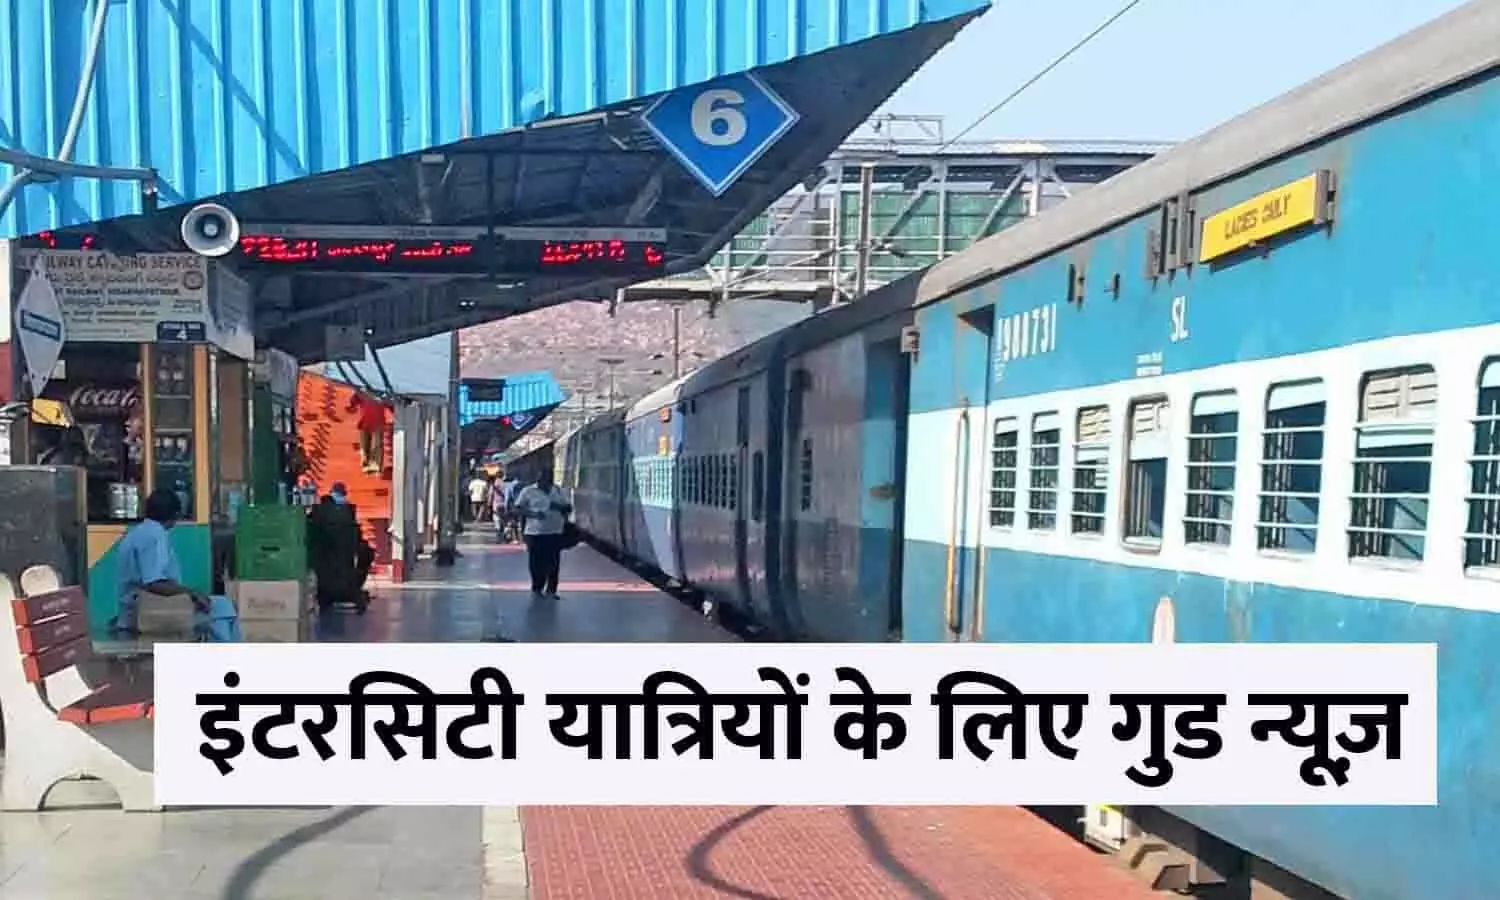 Intercity Train Latest Update In Hindi 2023: इंटरसिटी यात्रियों के लिए गुड न्यूज़! फटाफट जाने